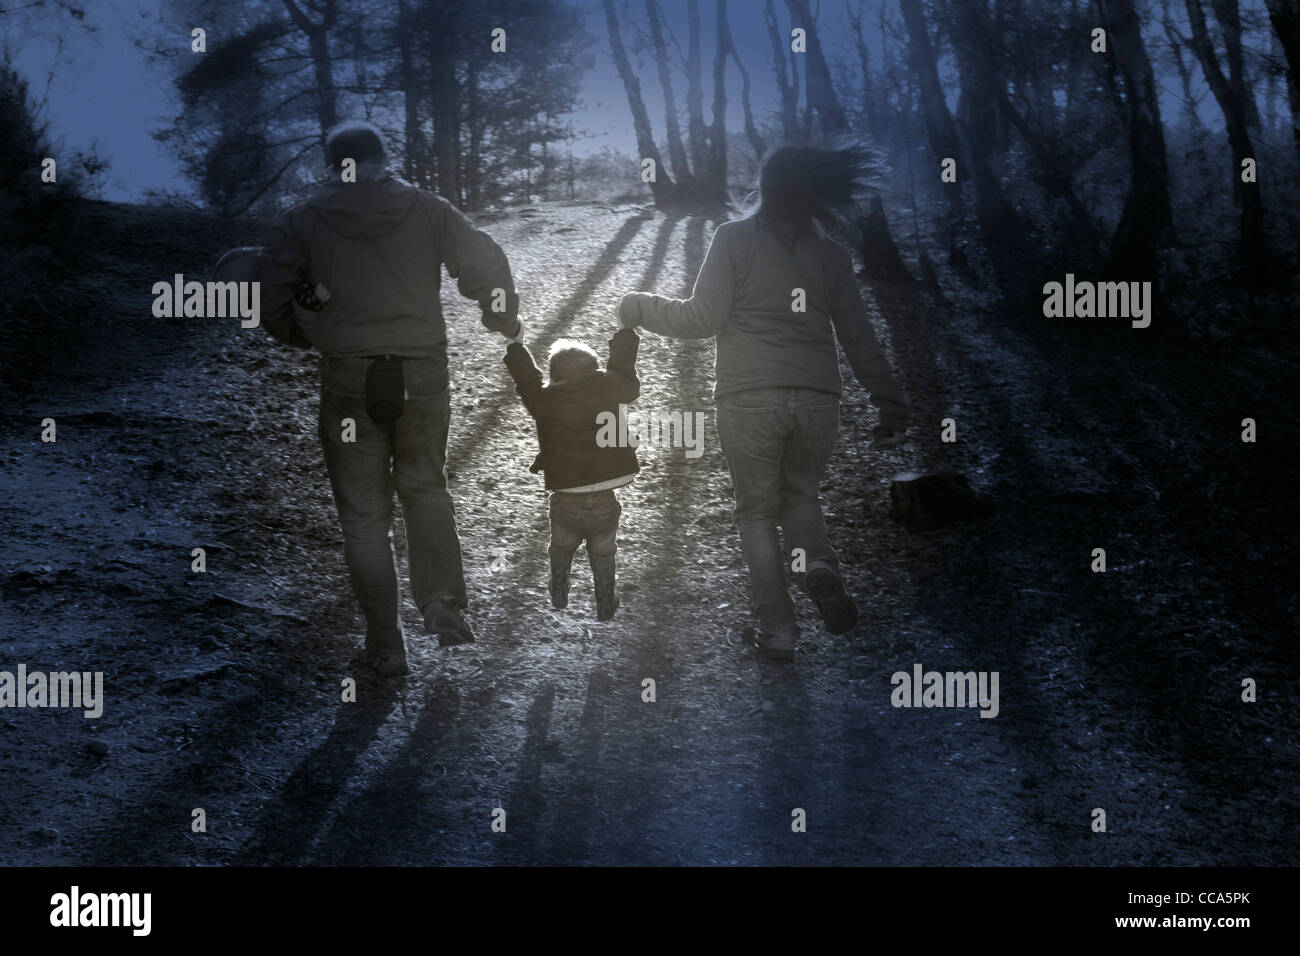 Junge Familie spielen swingenden jungen Hand in Hand und im Wald spazieren Stockfoto